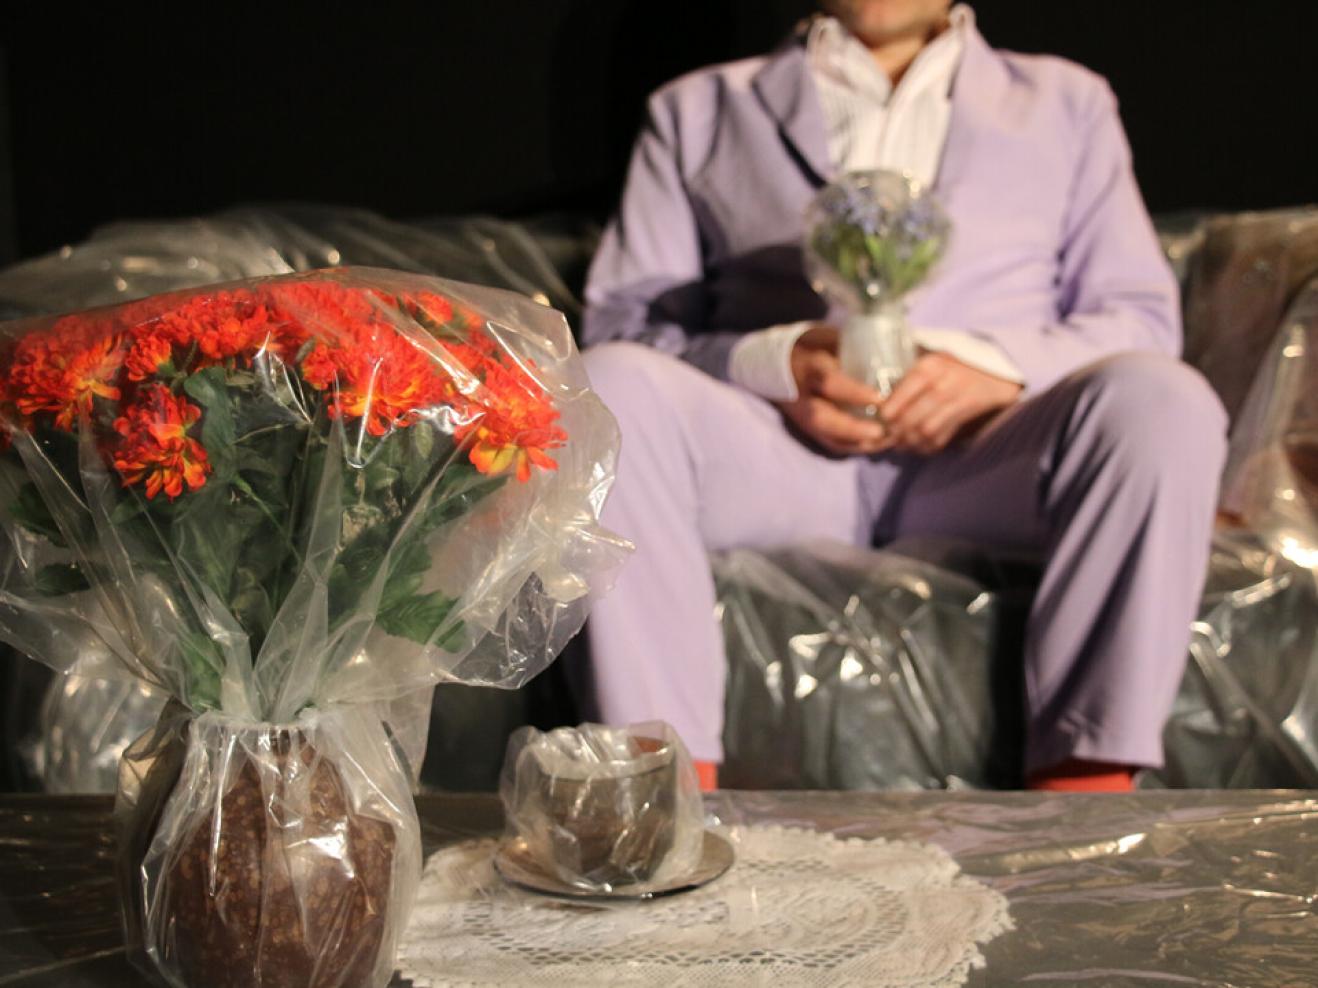 In Folie verpackte Blumen stehen in einer Vase, dahinter sitzt ein Mann im Anzug.